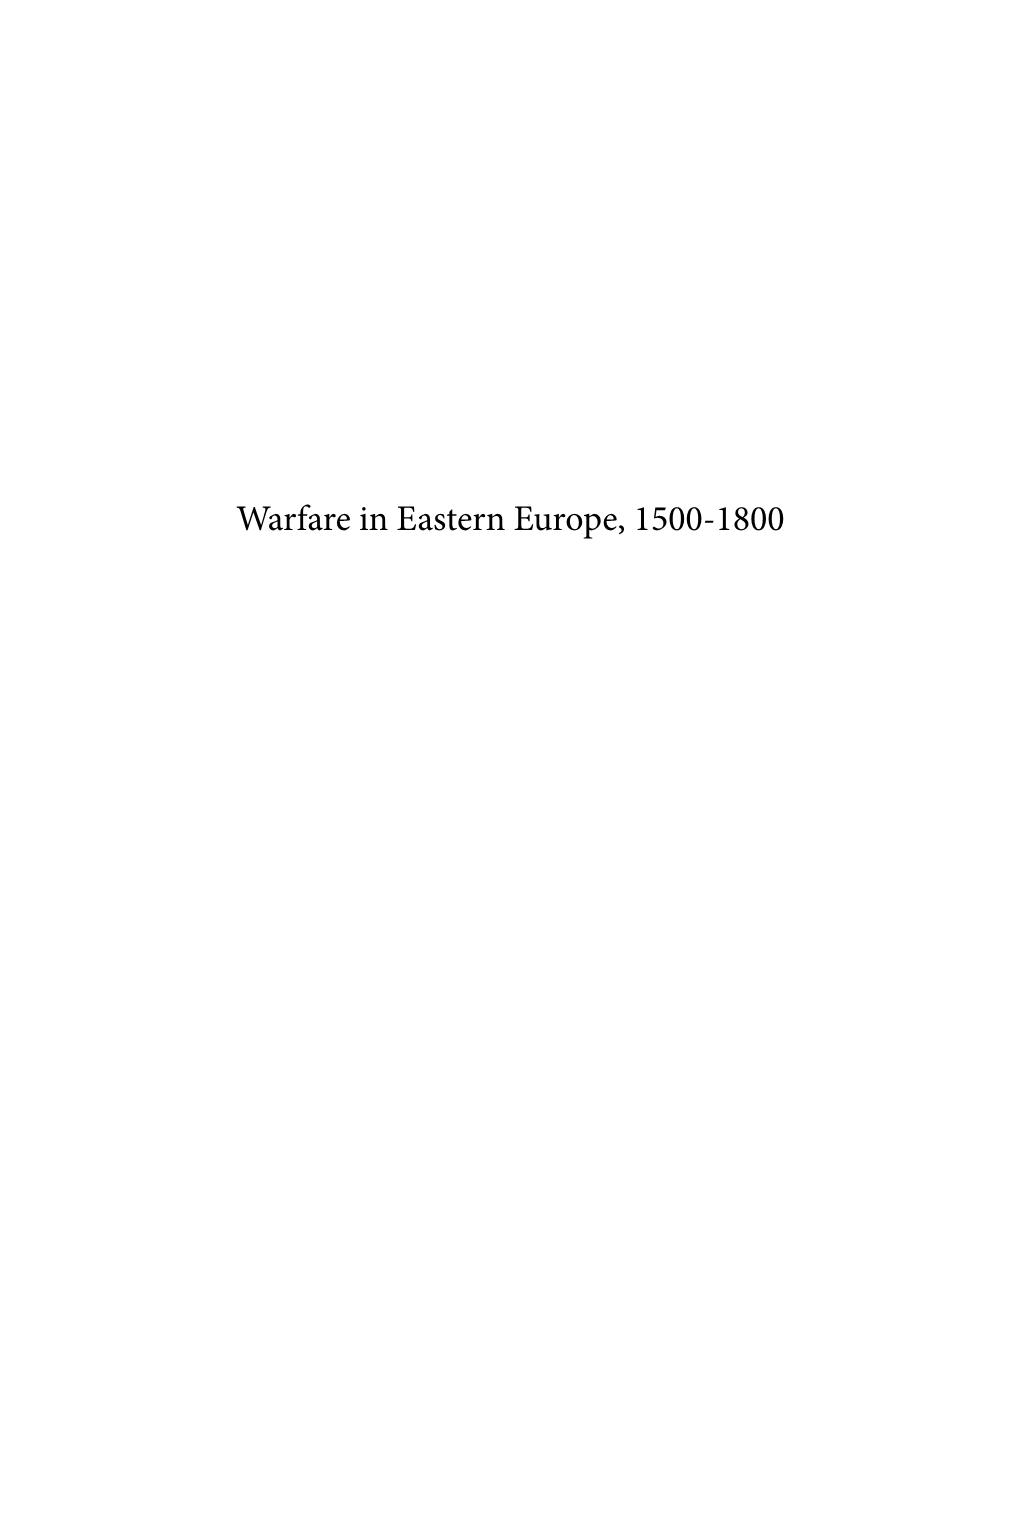 Warfare in Eastern Europe, 1500-1800 History of Warfare